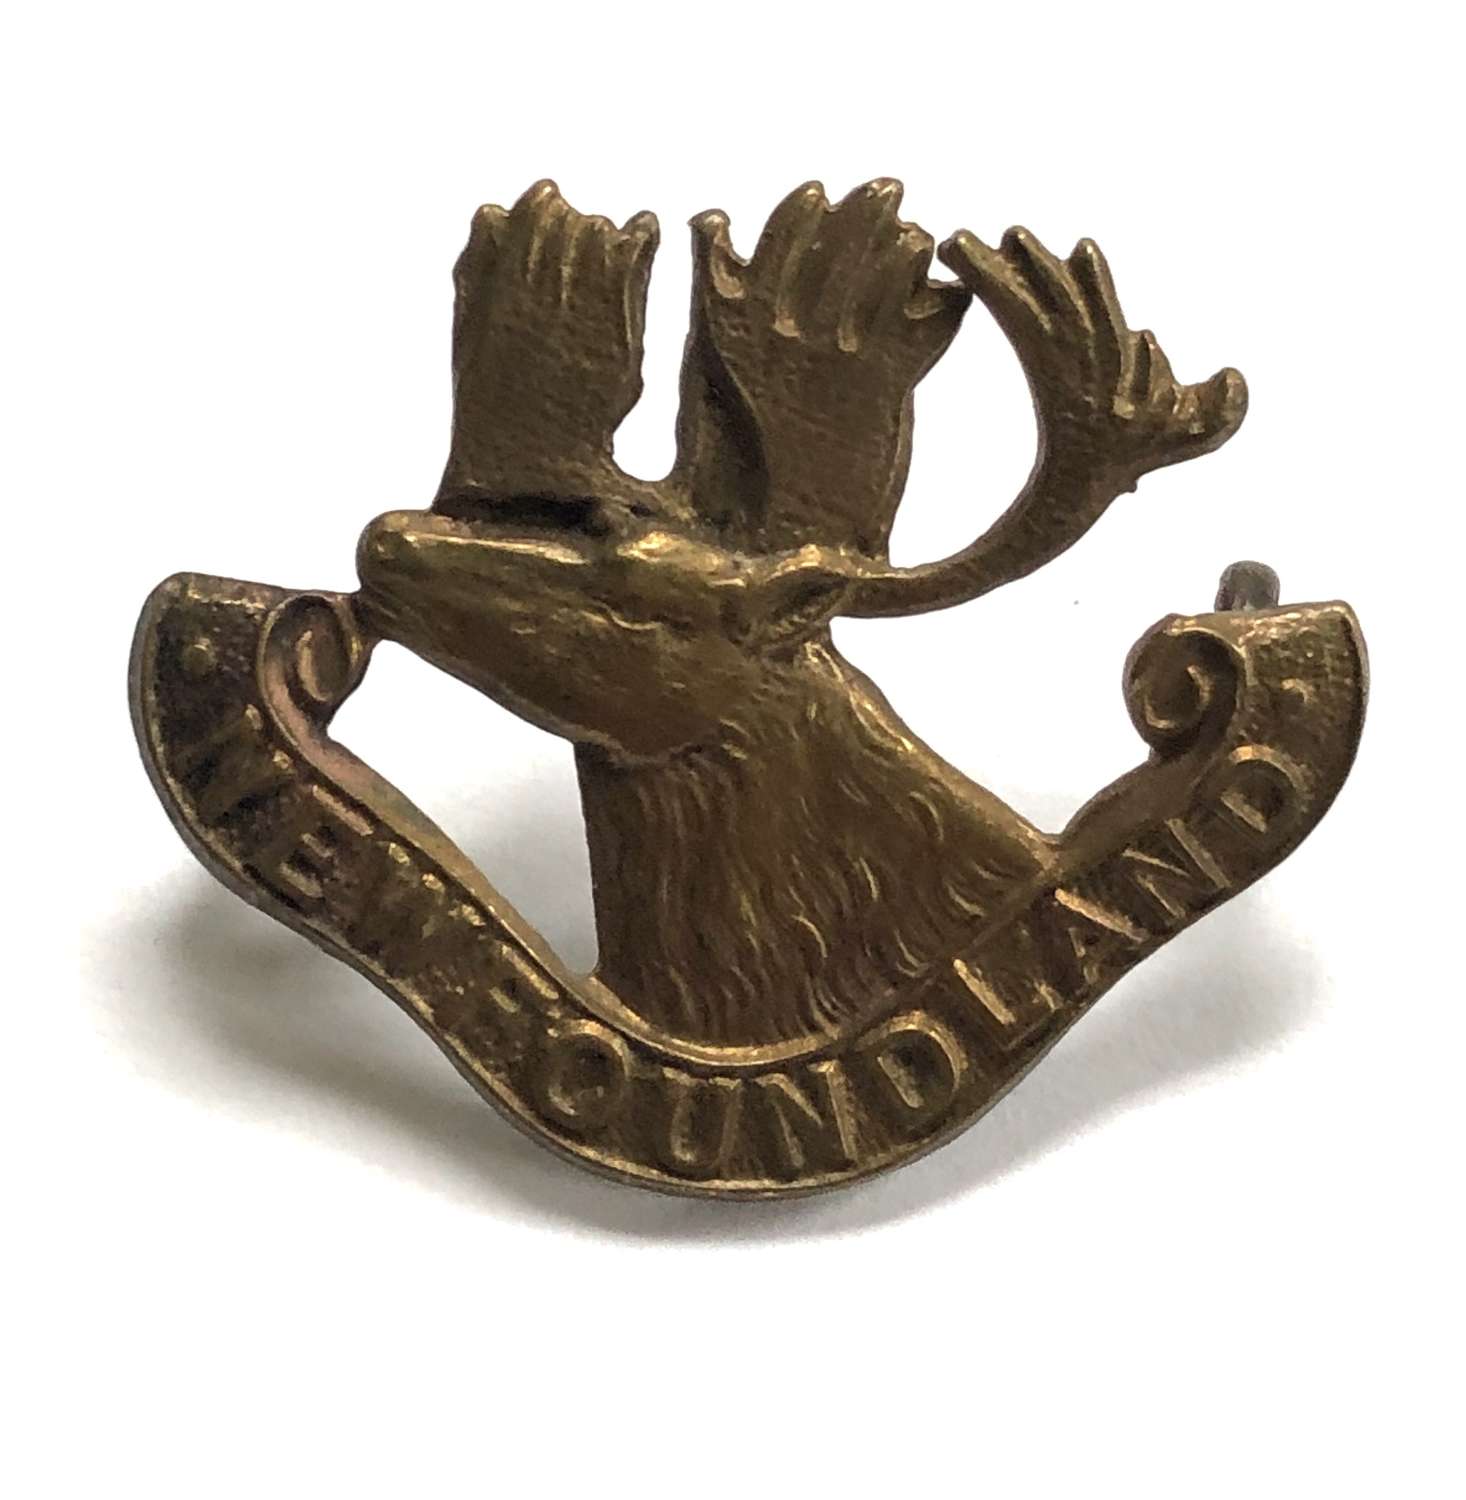 Canadian 1st Newfoundland Regiment cap badge circa 1914-18